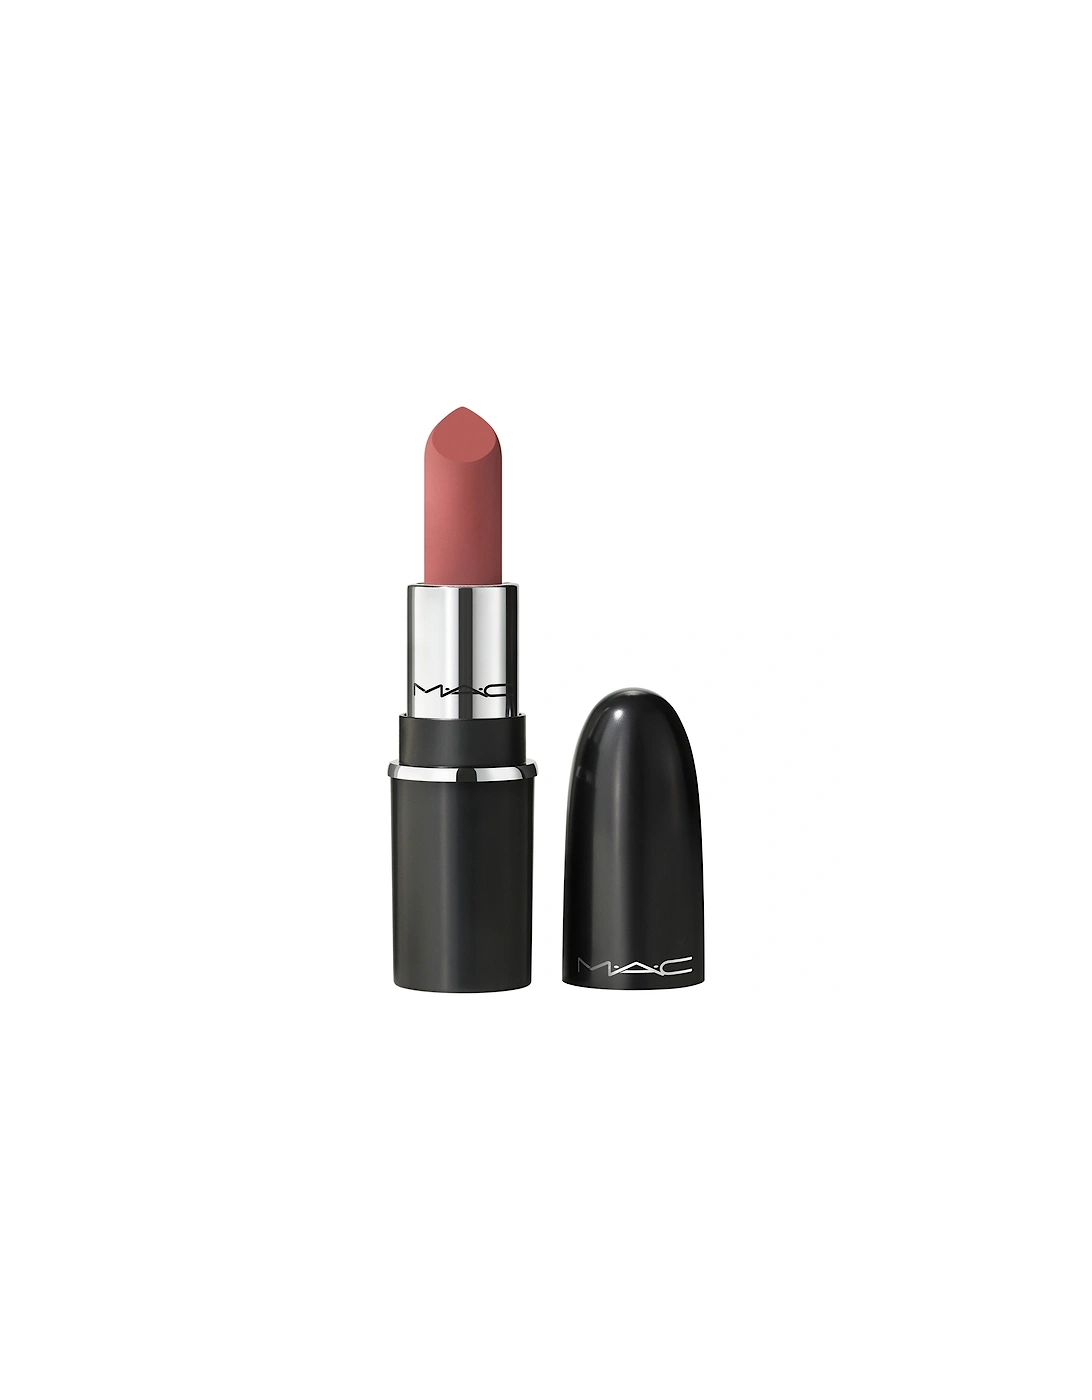 Macximal Silky Matte Mini Lipstick - Velvet Teddy, 2 of 1